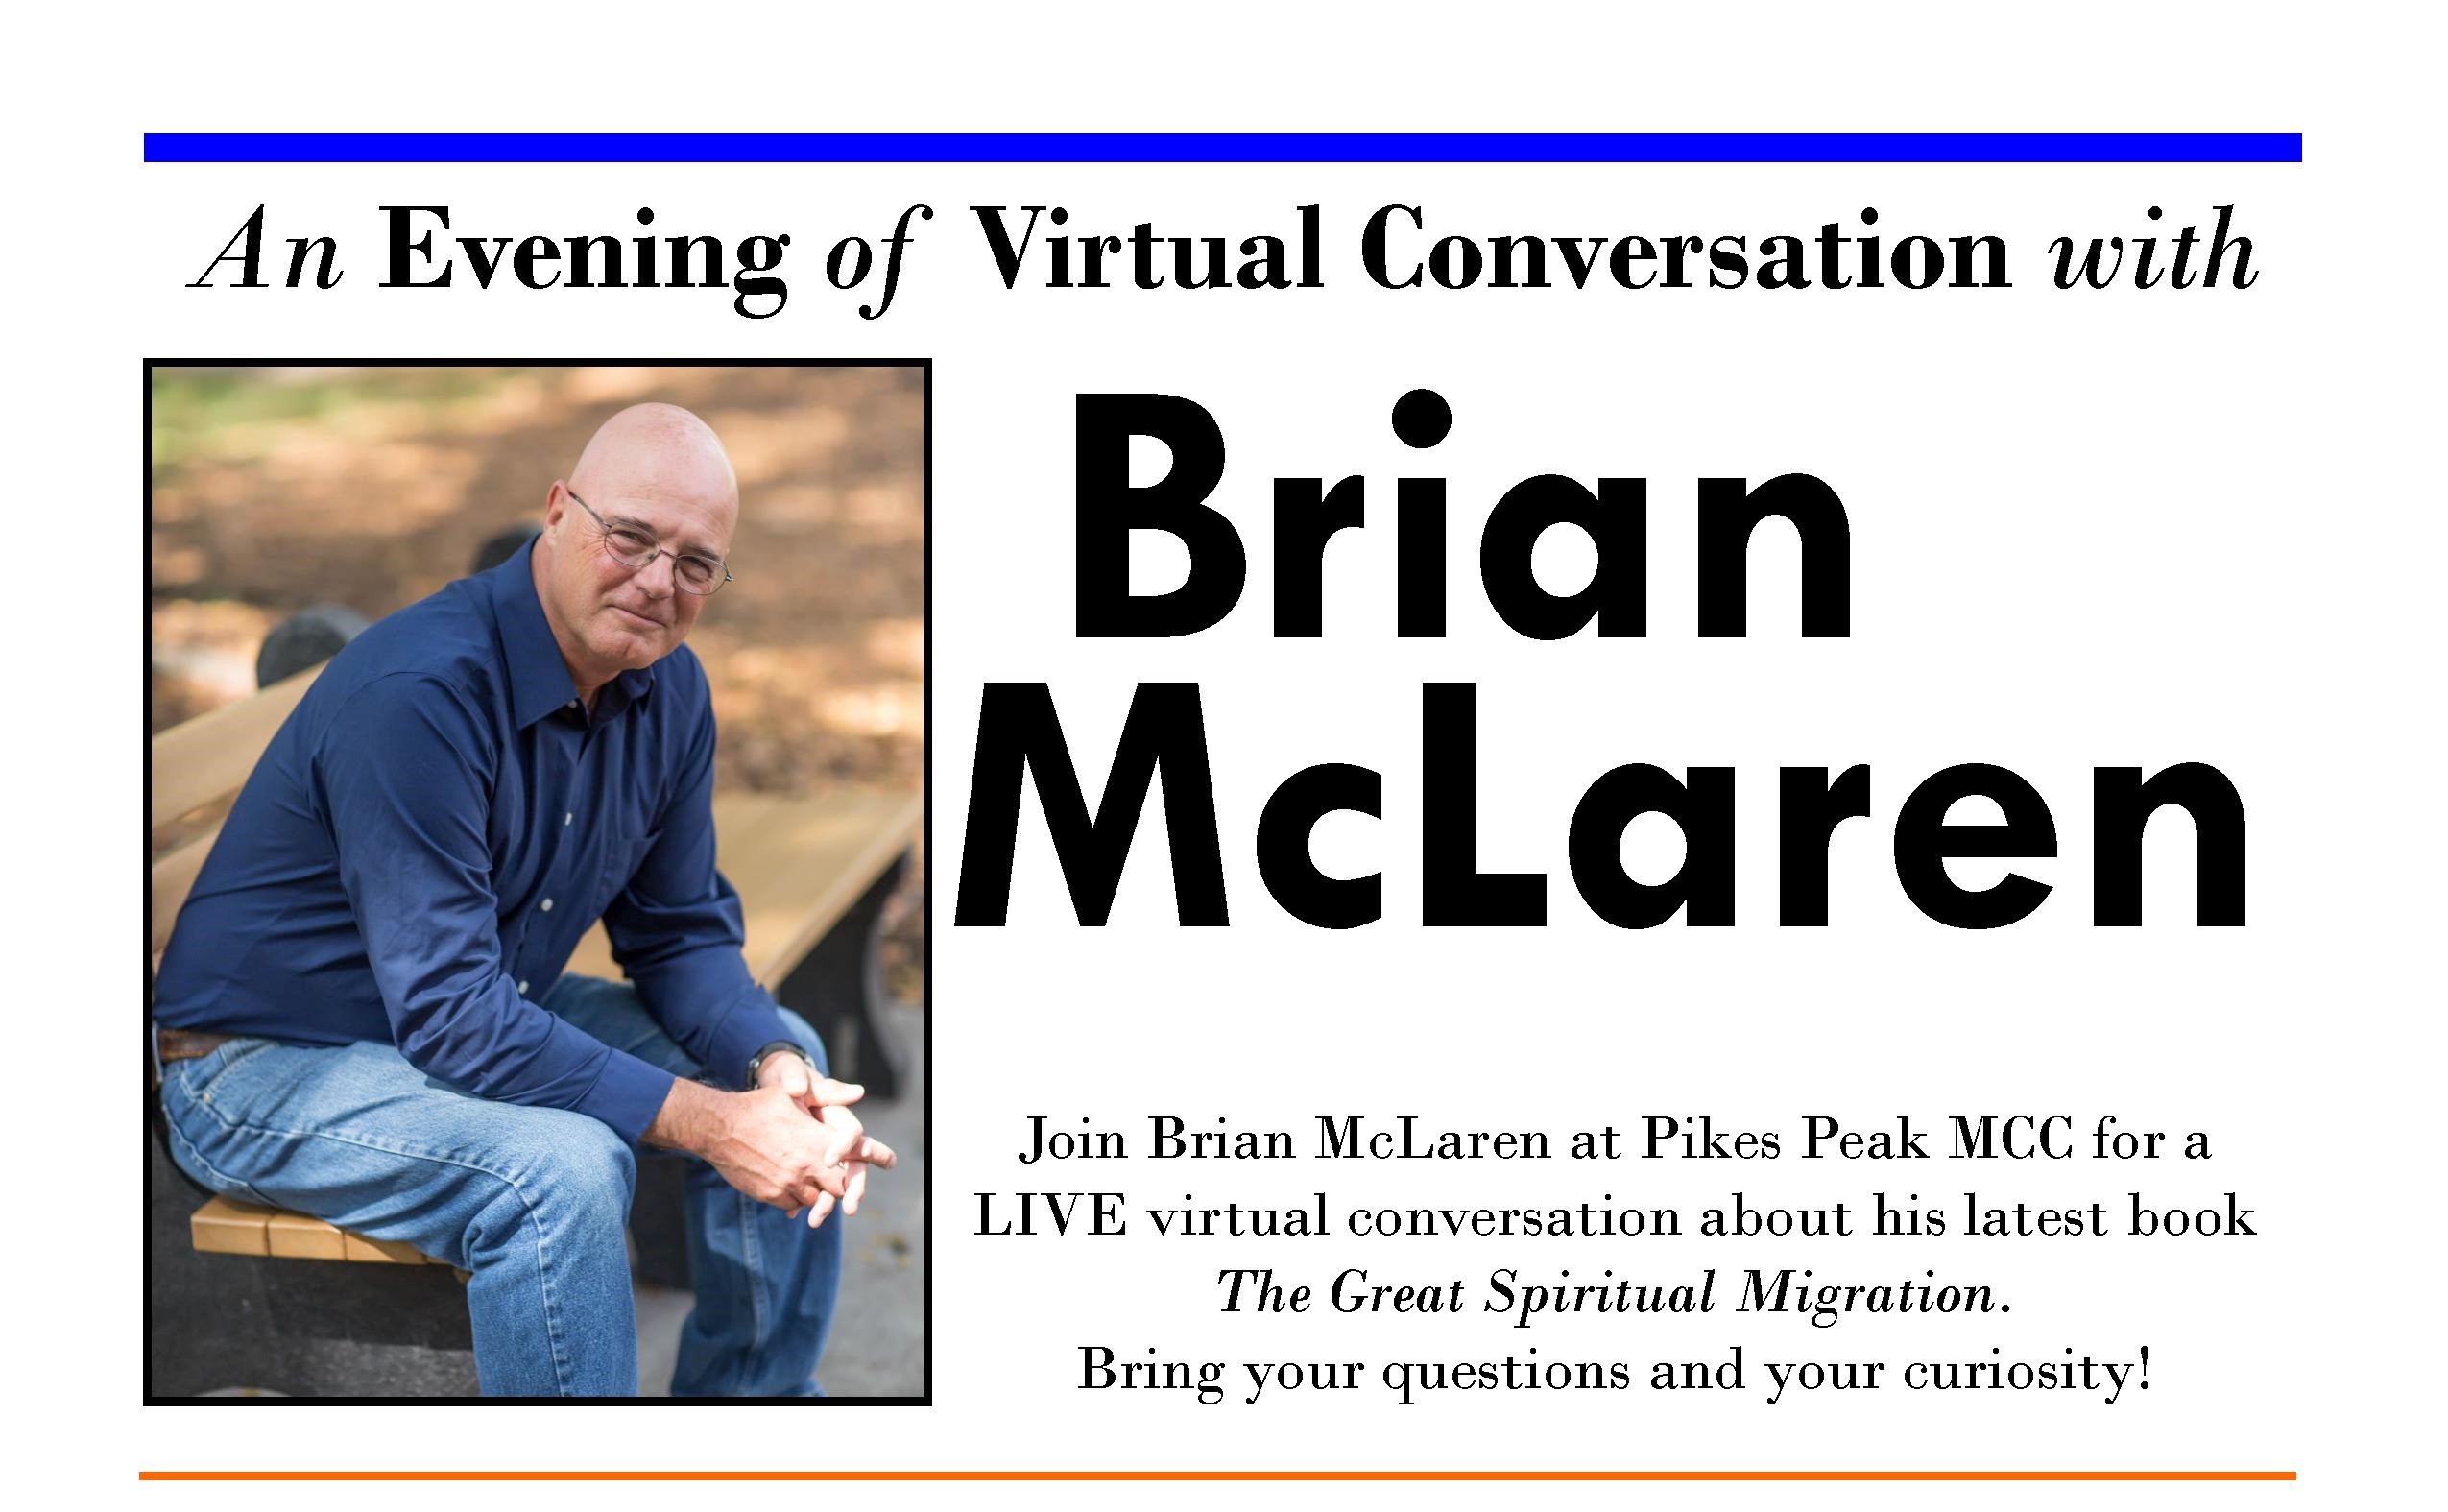 Brian McLaren at Pikes Peak MCC Event Image